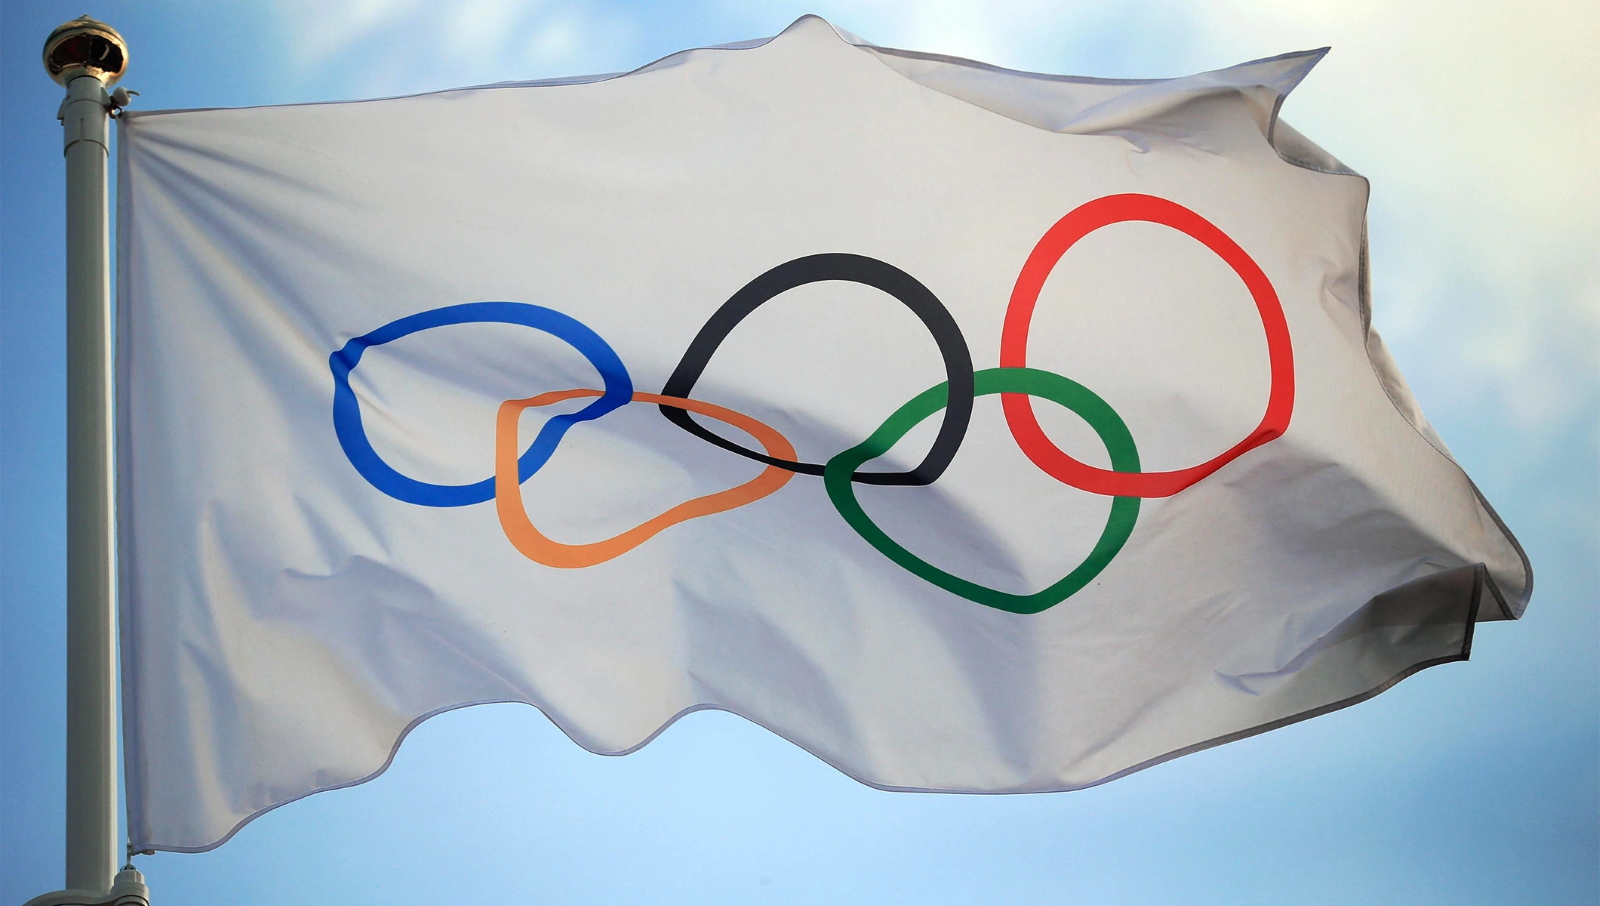 Los Juegos Olímpicos de Tokio se aplazan a 2021 debido al coronavirus